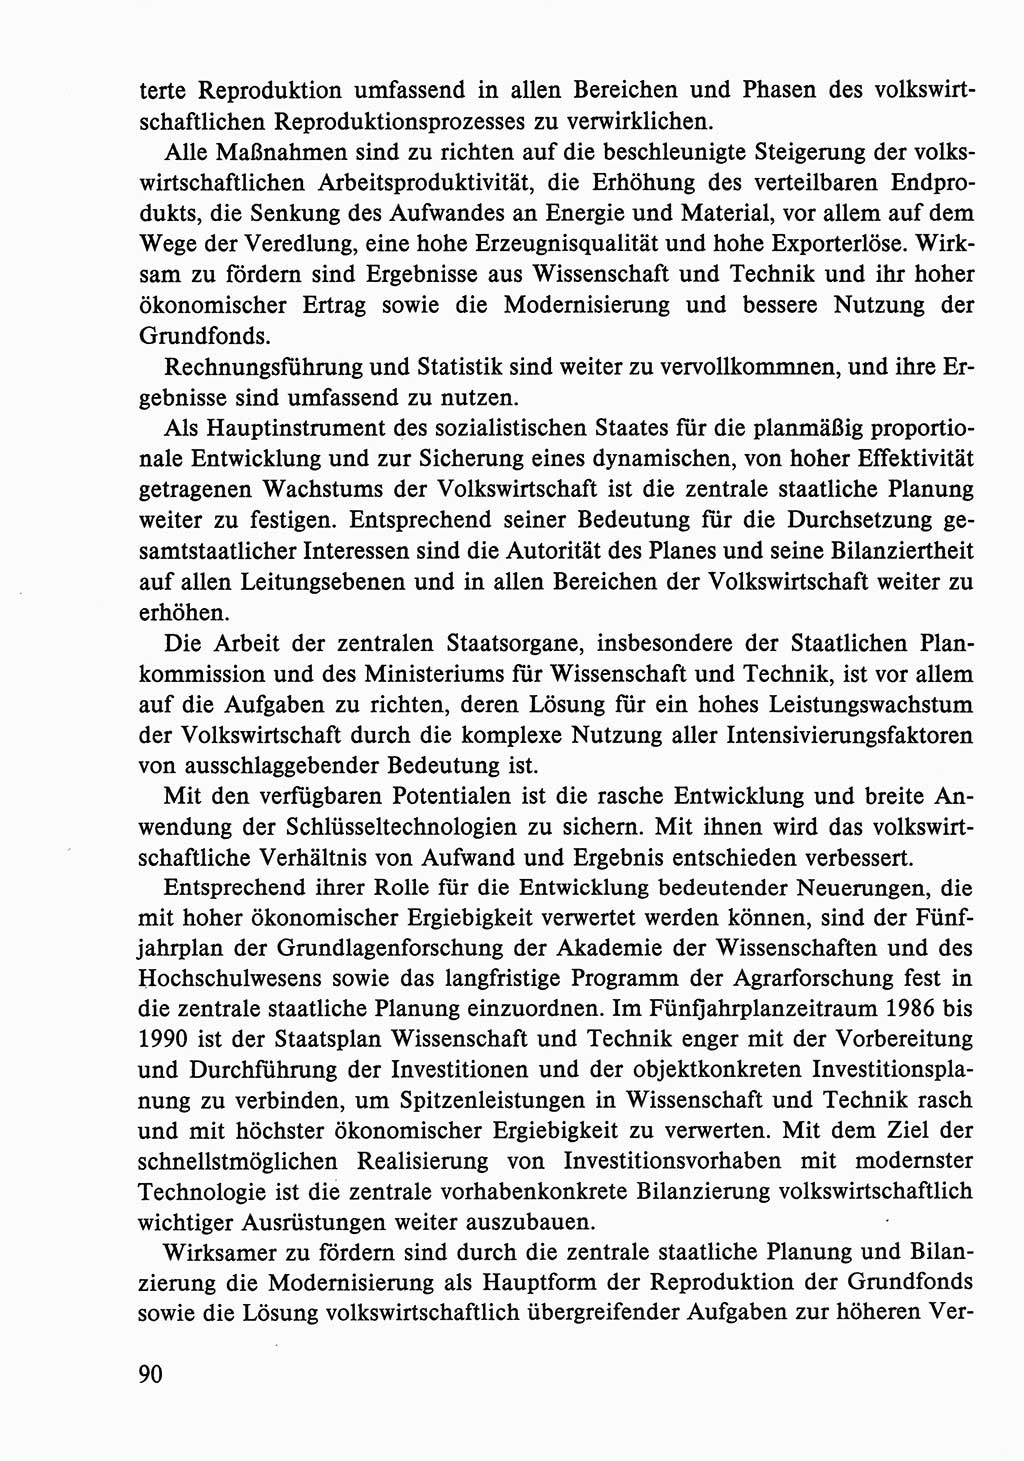 Dokumente der Sozialistischen Einheitspartei Deutschlands (SED) [Deutsche Demokratische Republik (DDR)] 1986-1987, Seite 90 (Dok. SED DDR 1986-1987, S. 90)